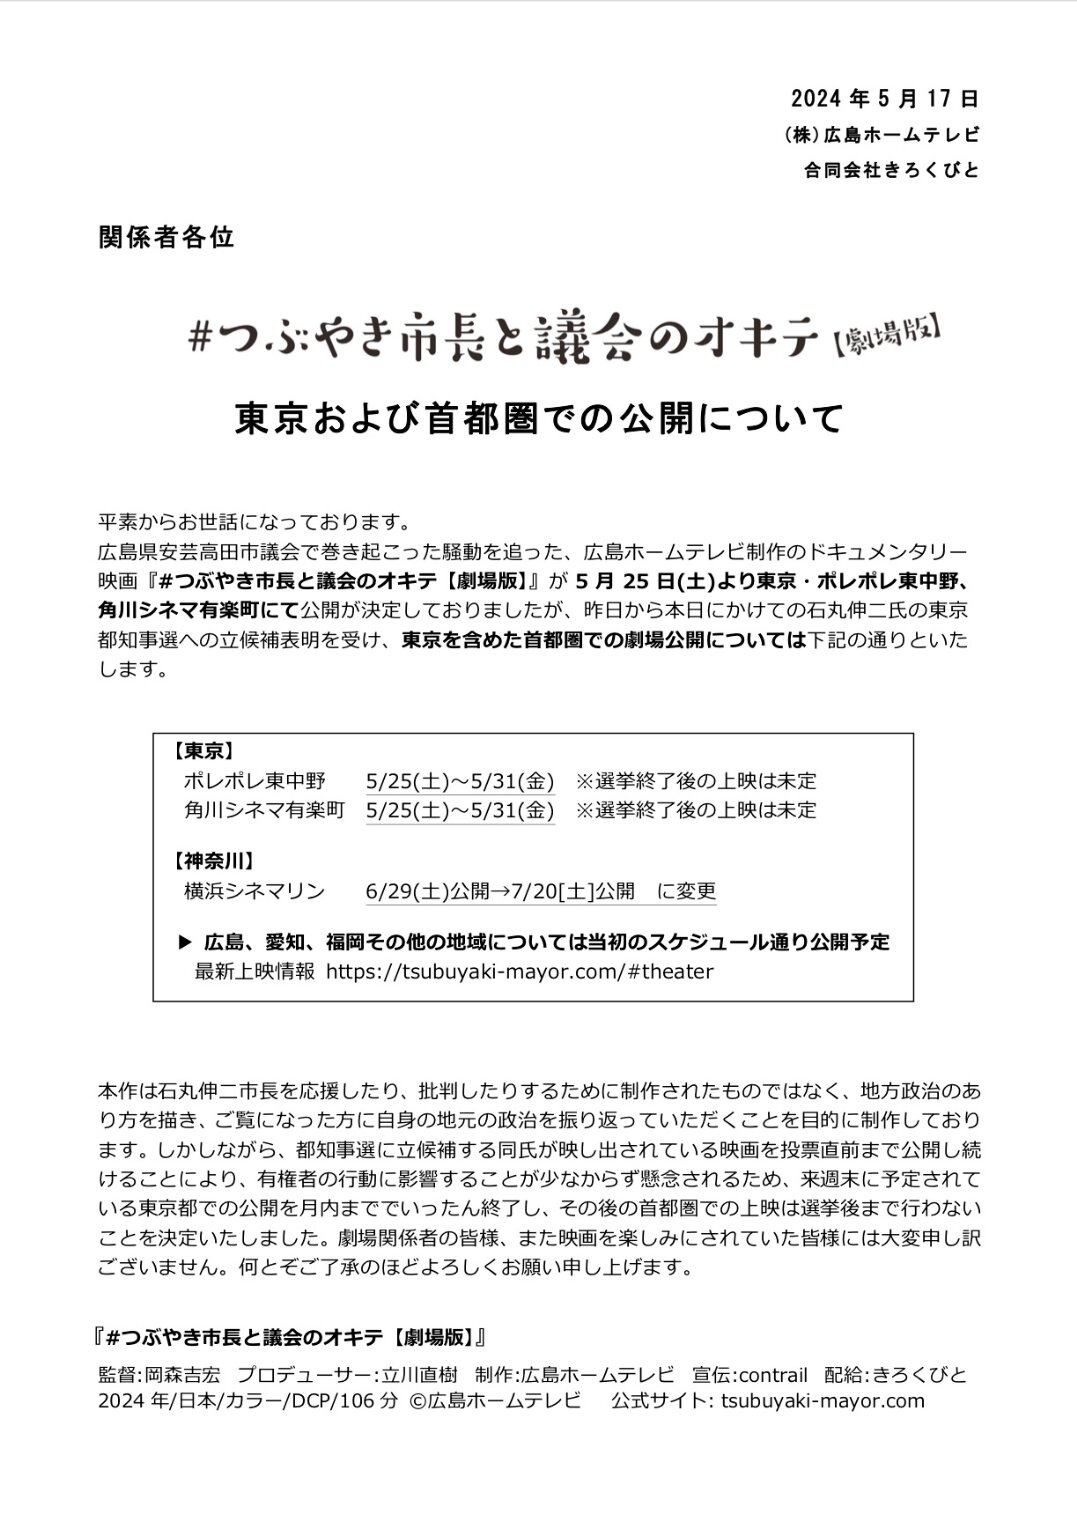 広島ホームテレビが、配給会社「きろくびと」と連名で発表した、上映スケジュール変更に関するリリース（広島ホームテレビ提供）